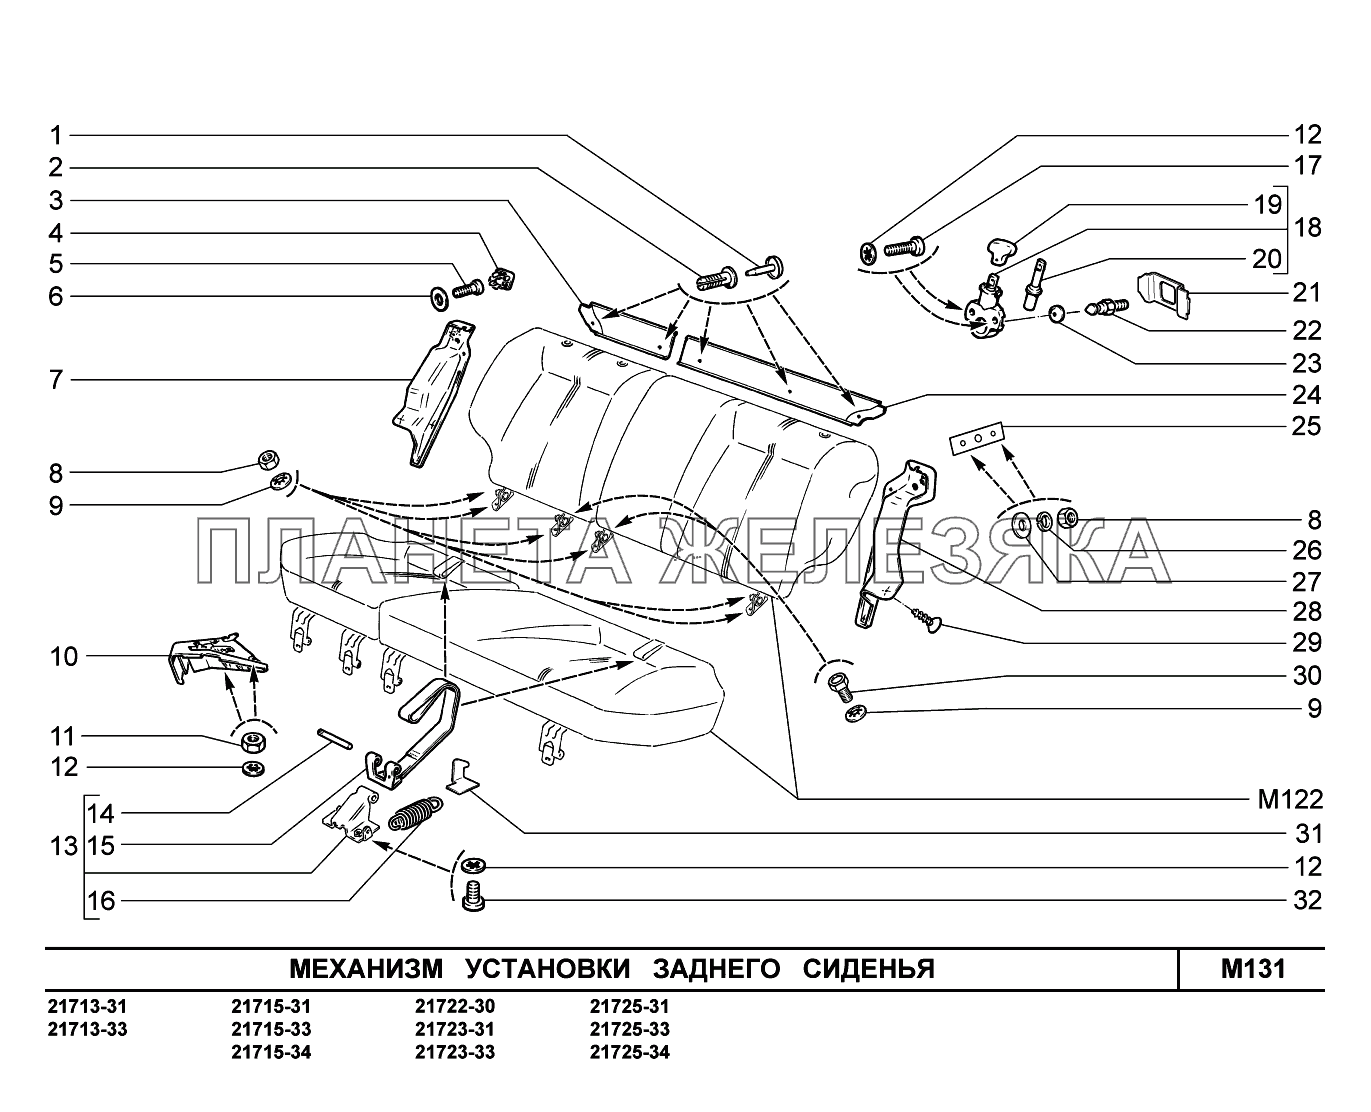 M131. Механизм установки заднего сиденья ВАЗ-2170 